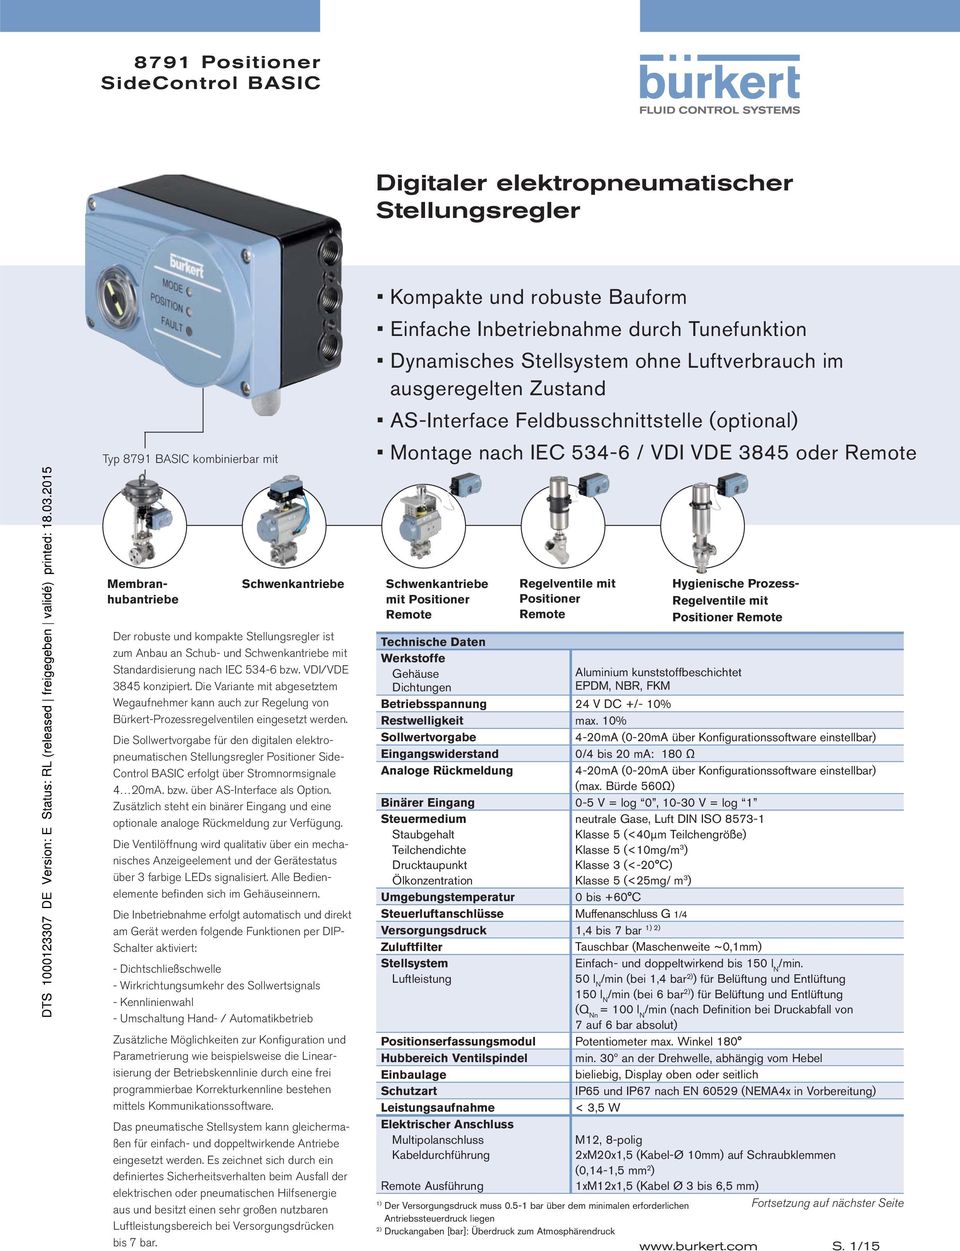 an Schub- und Schwenkantriebe mit Standardisierung nach IEC 534-6 bzw. VDI/VDE 3845 konzipiert.